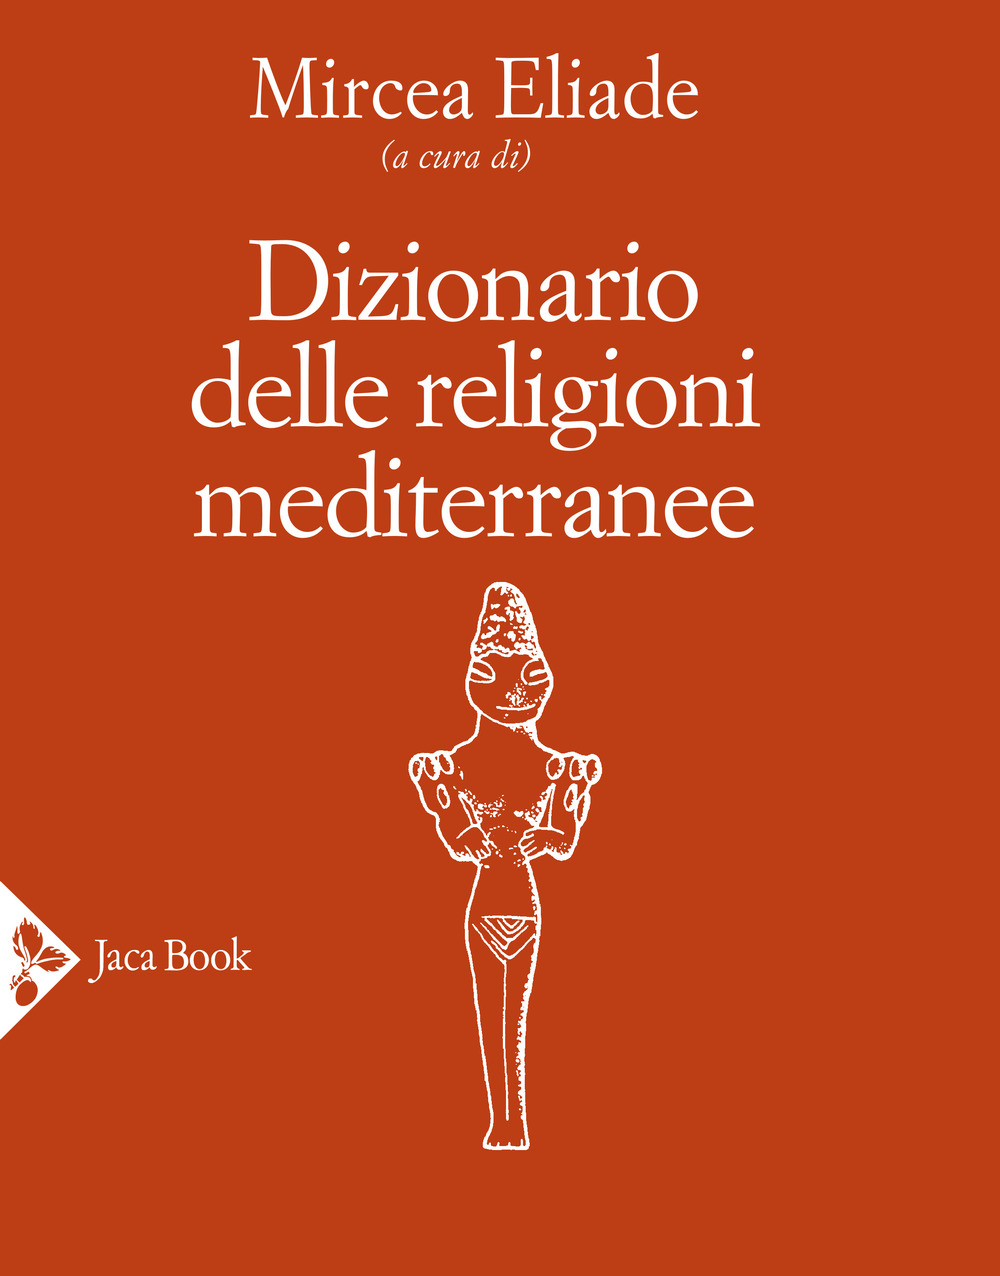 Image of Dizionario delle religioni mediterranee